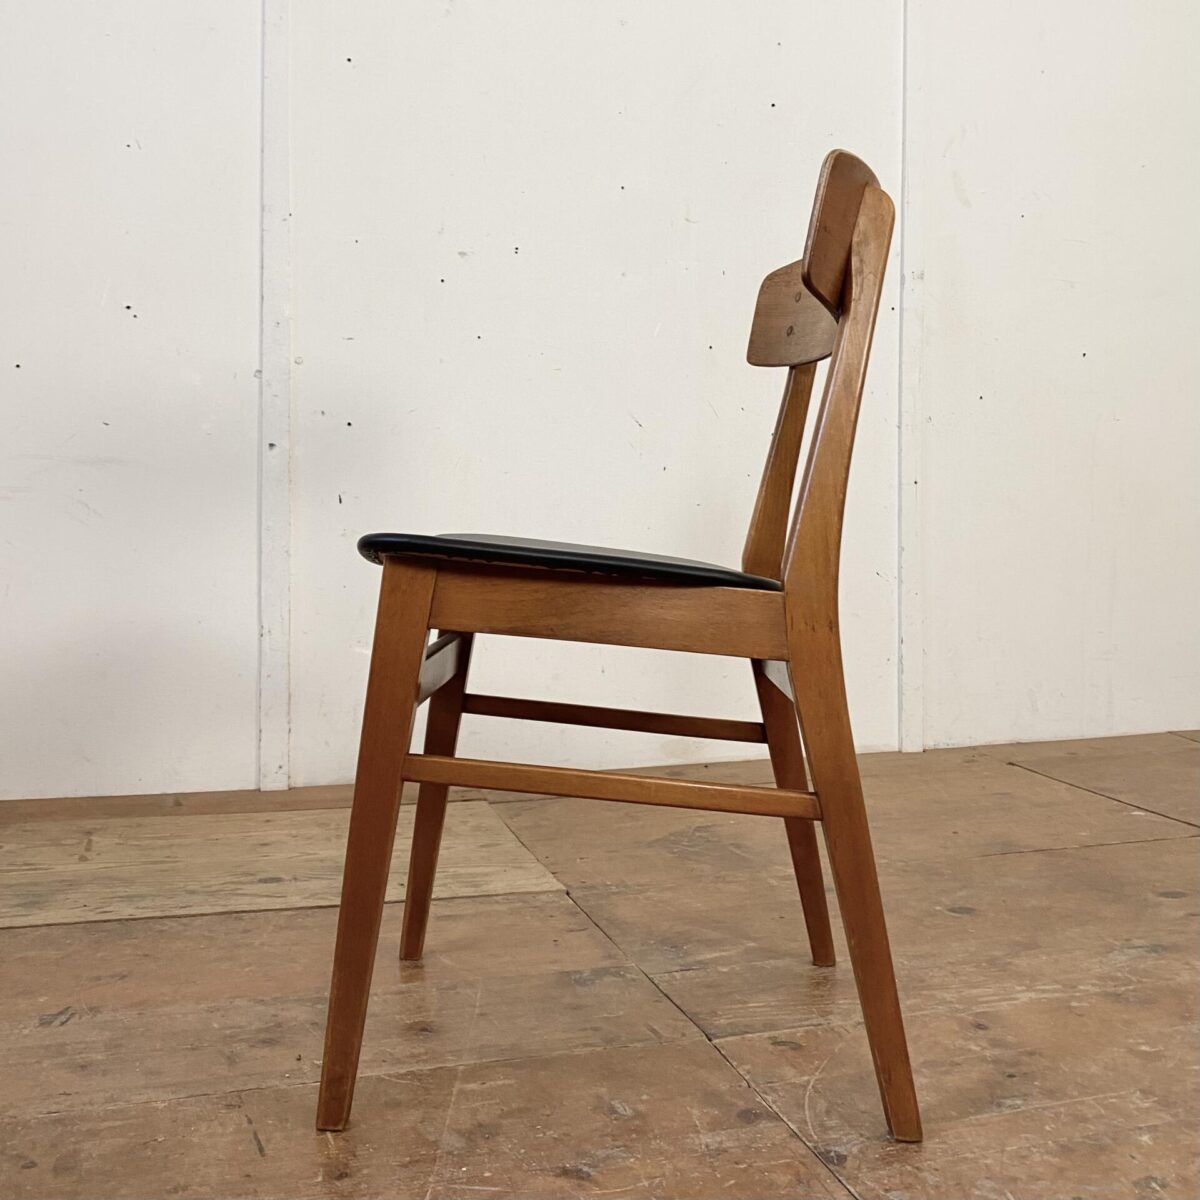 Einzelner Esszimmer Stuhl von Farstrup Møbler, aus den 60er Jahren. Der Stuhl ist aus Buche Vollholz, die Rückenlehne ist mit Teakholz furniert. Sitzfläche mit schwarzem Kunstleder bezogen, bis auf ein paar kleine Kratzer und etwas Wasserflecken am Holzgestell, in gutem Vintage Zustand.